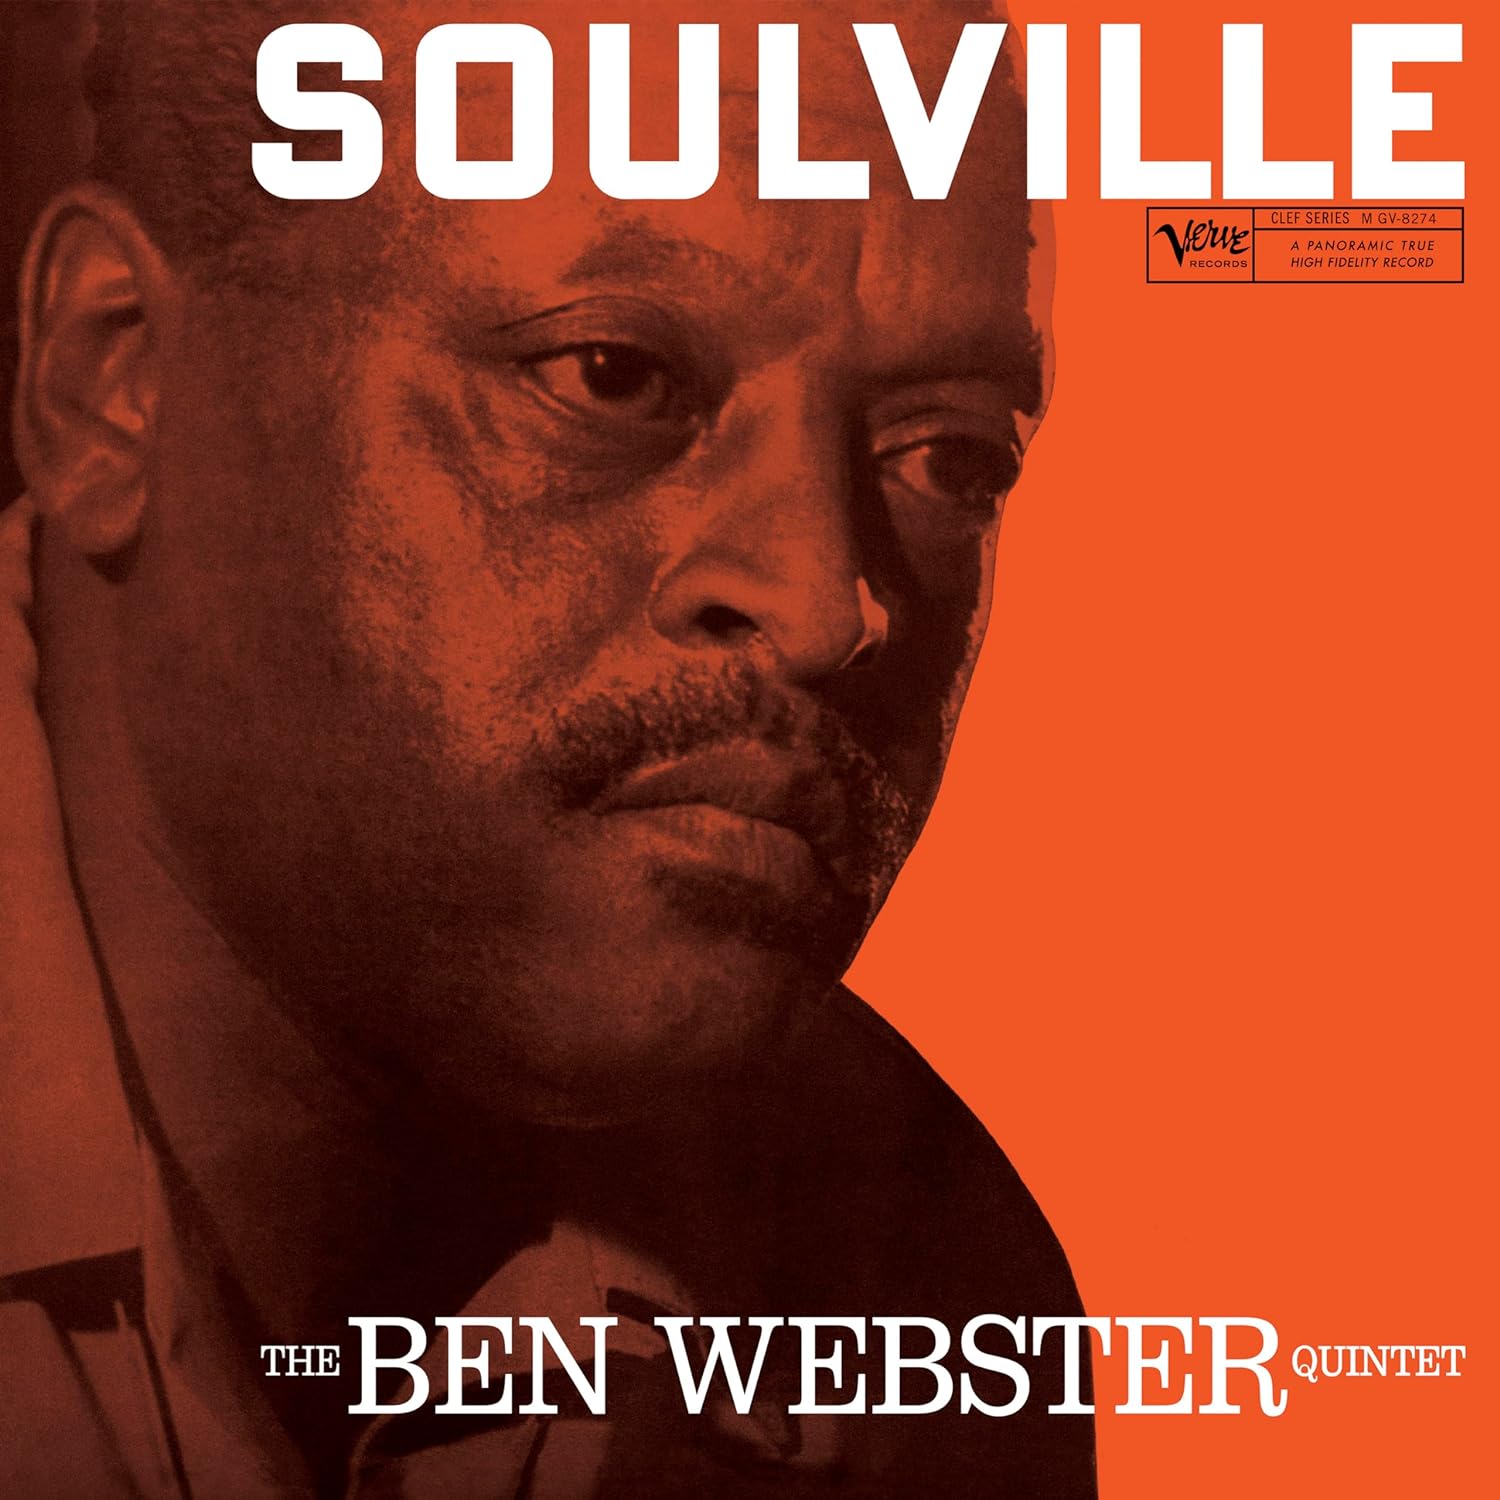 Ben Webster - Soulville [Verve Acoustic Sounds Series]